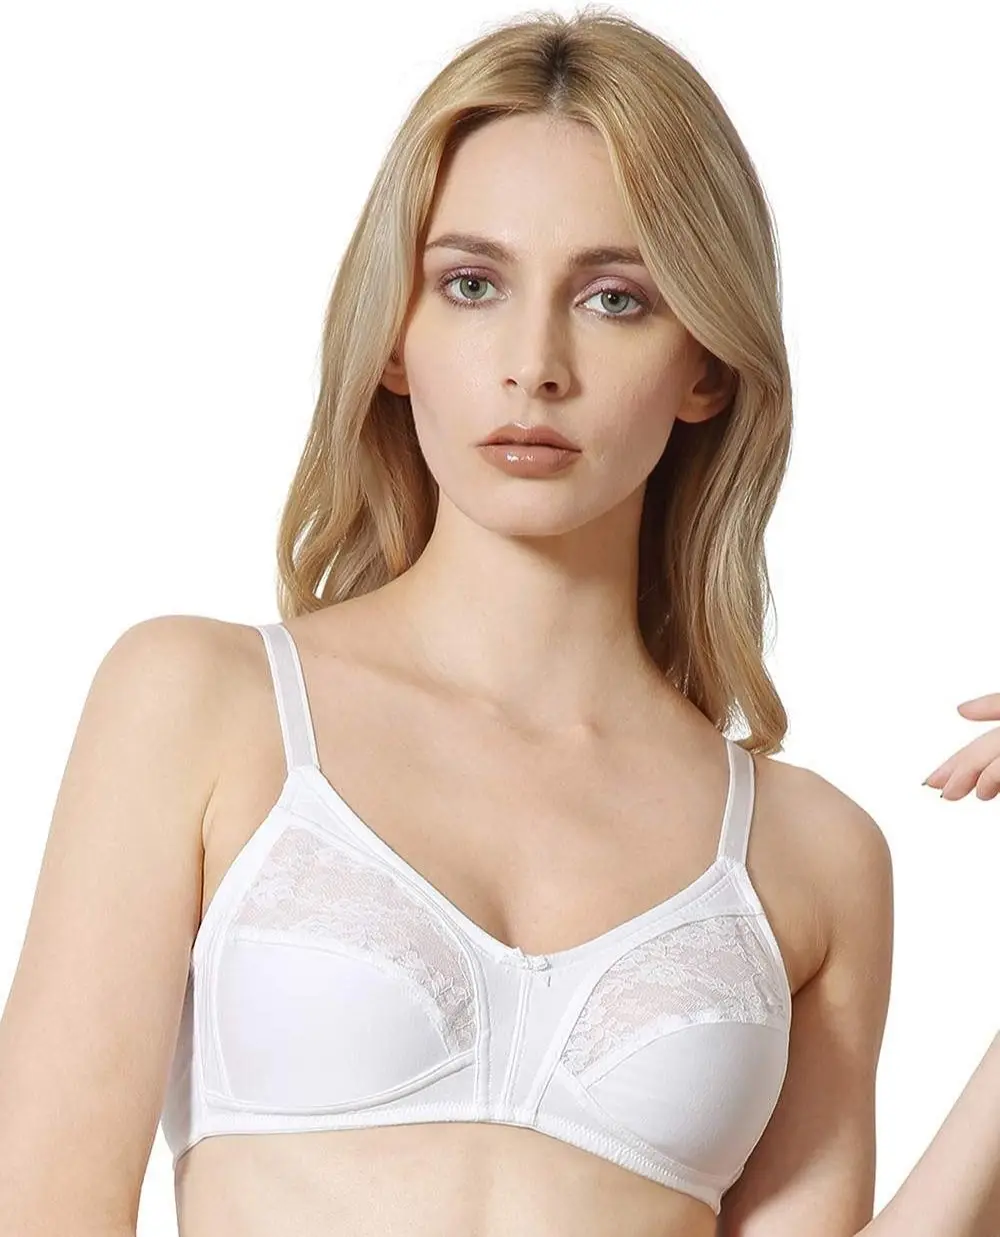 Bra seksi wanita trendi Lingerie Wanita Bra melar putih Premium dengan tali dapat diatur grosir persediaan pabrik wanita